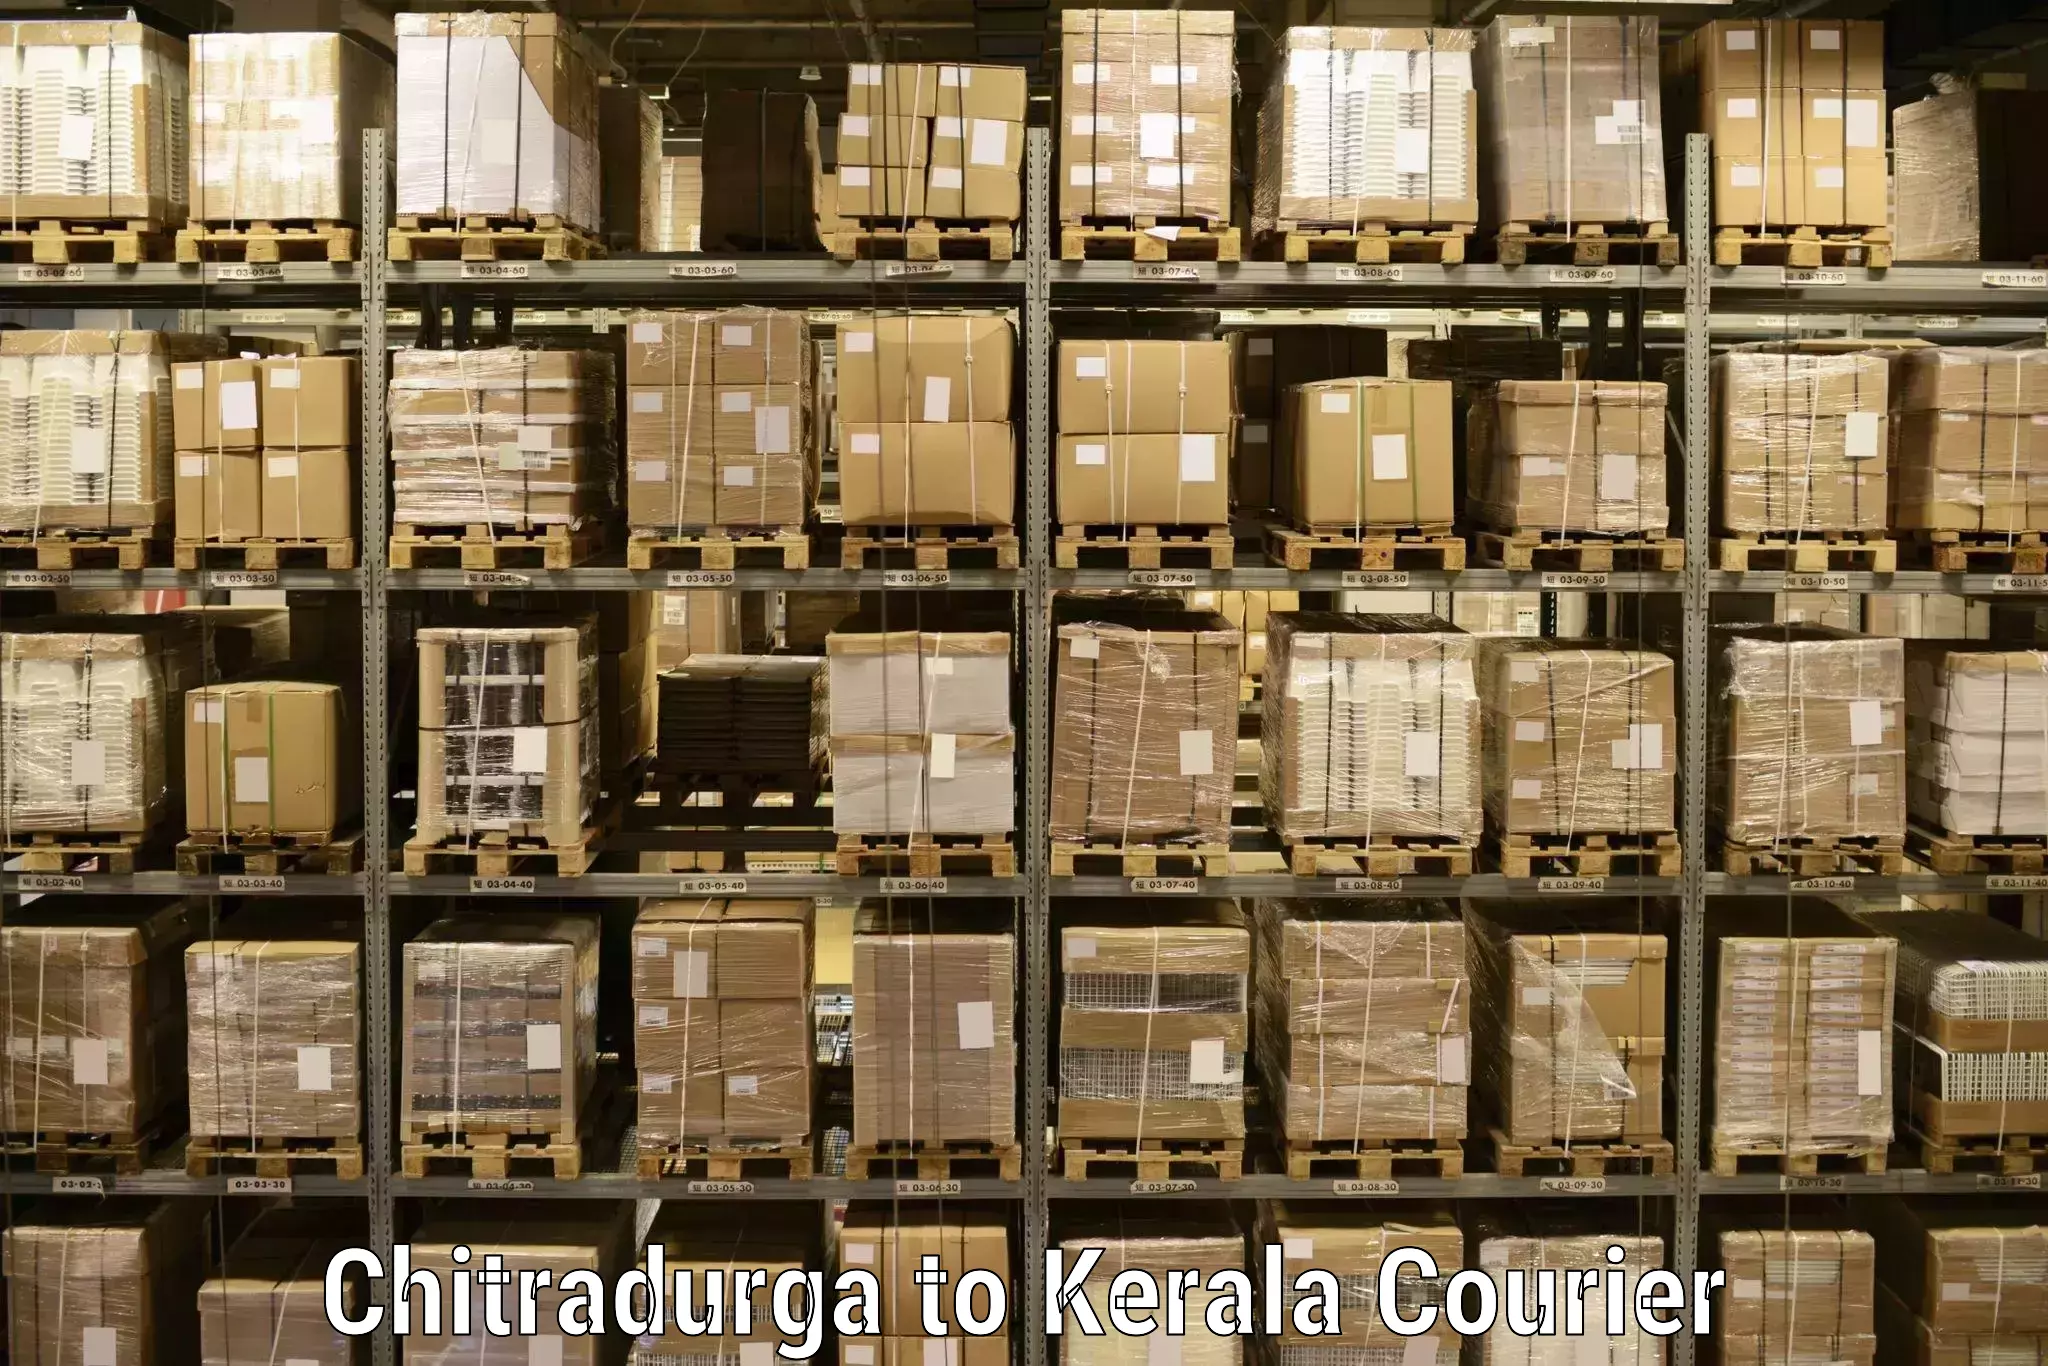 Affordable parcel service Chitradurga to Kollam